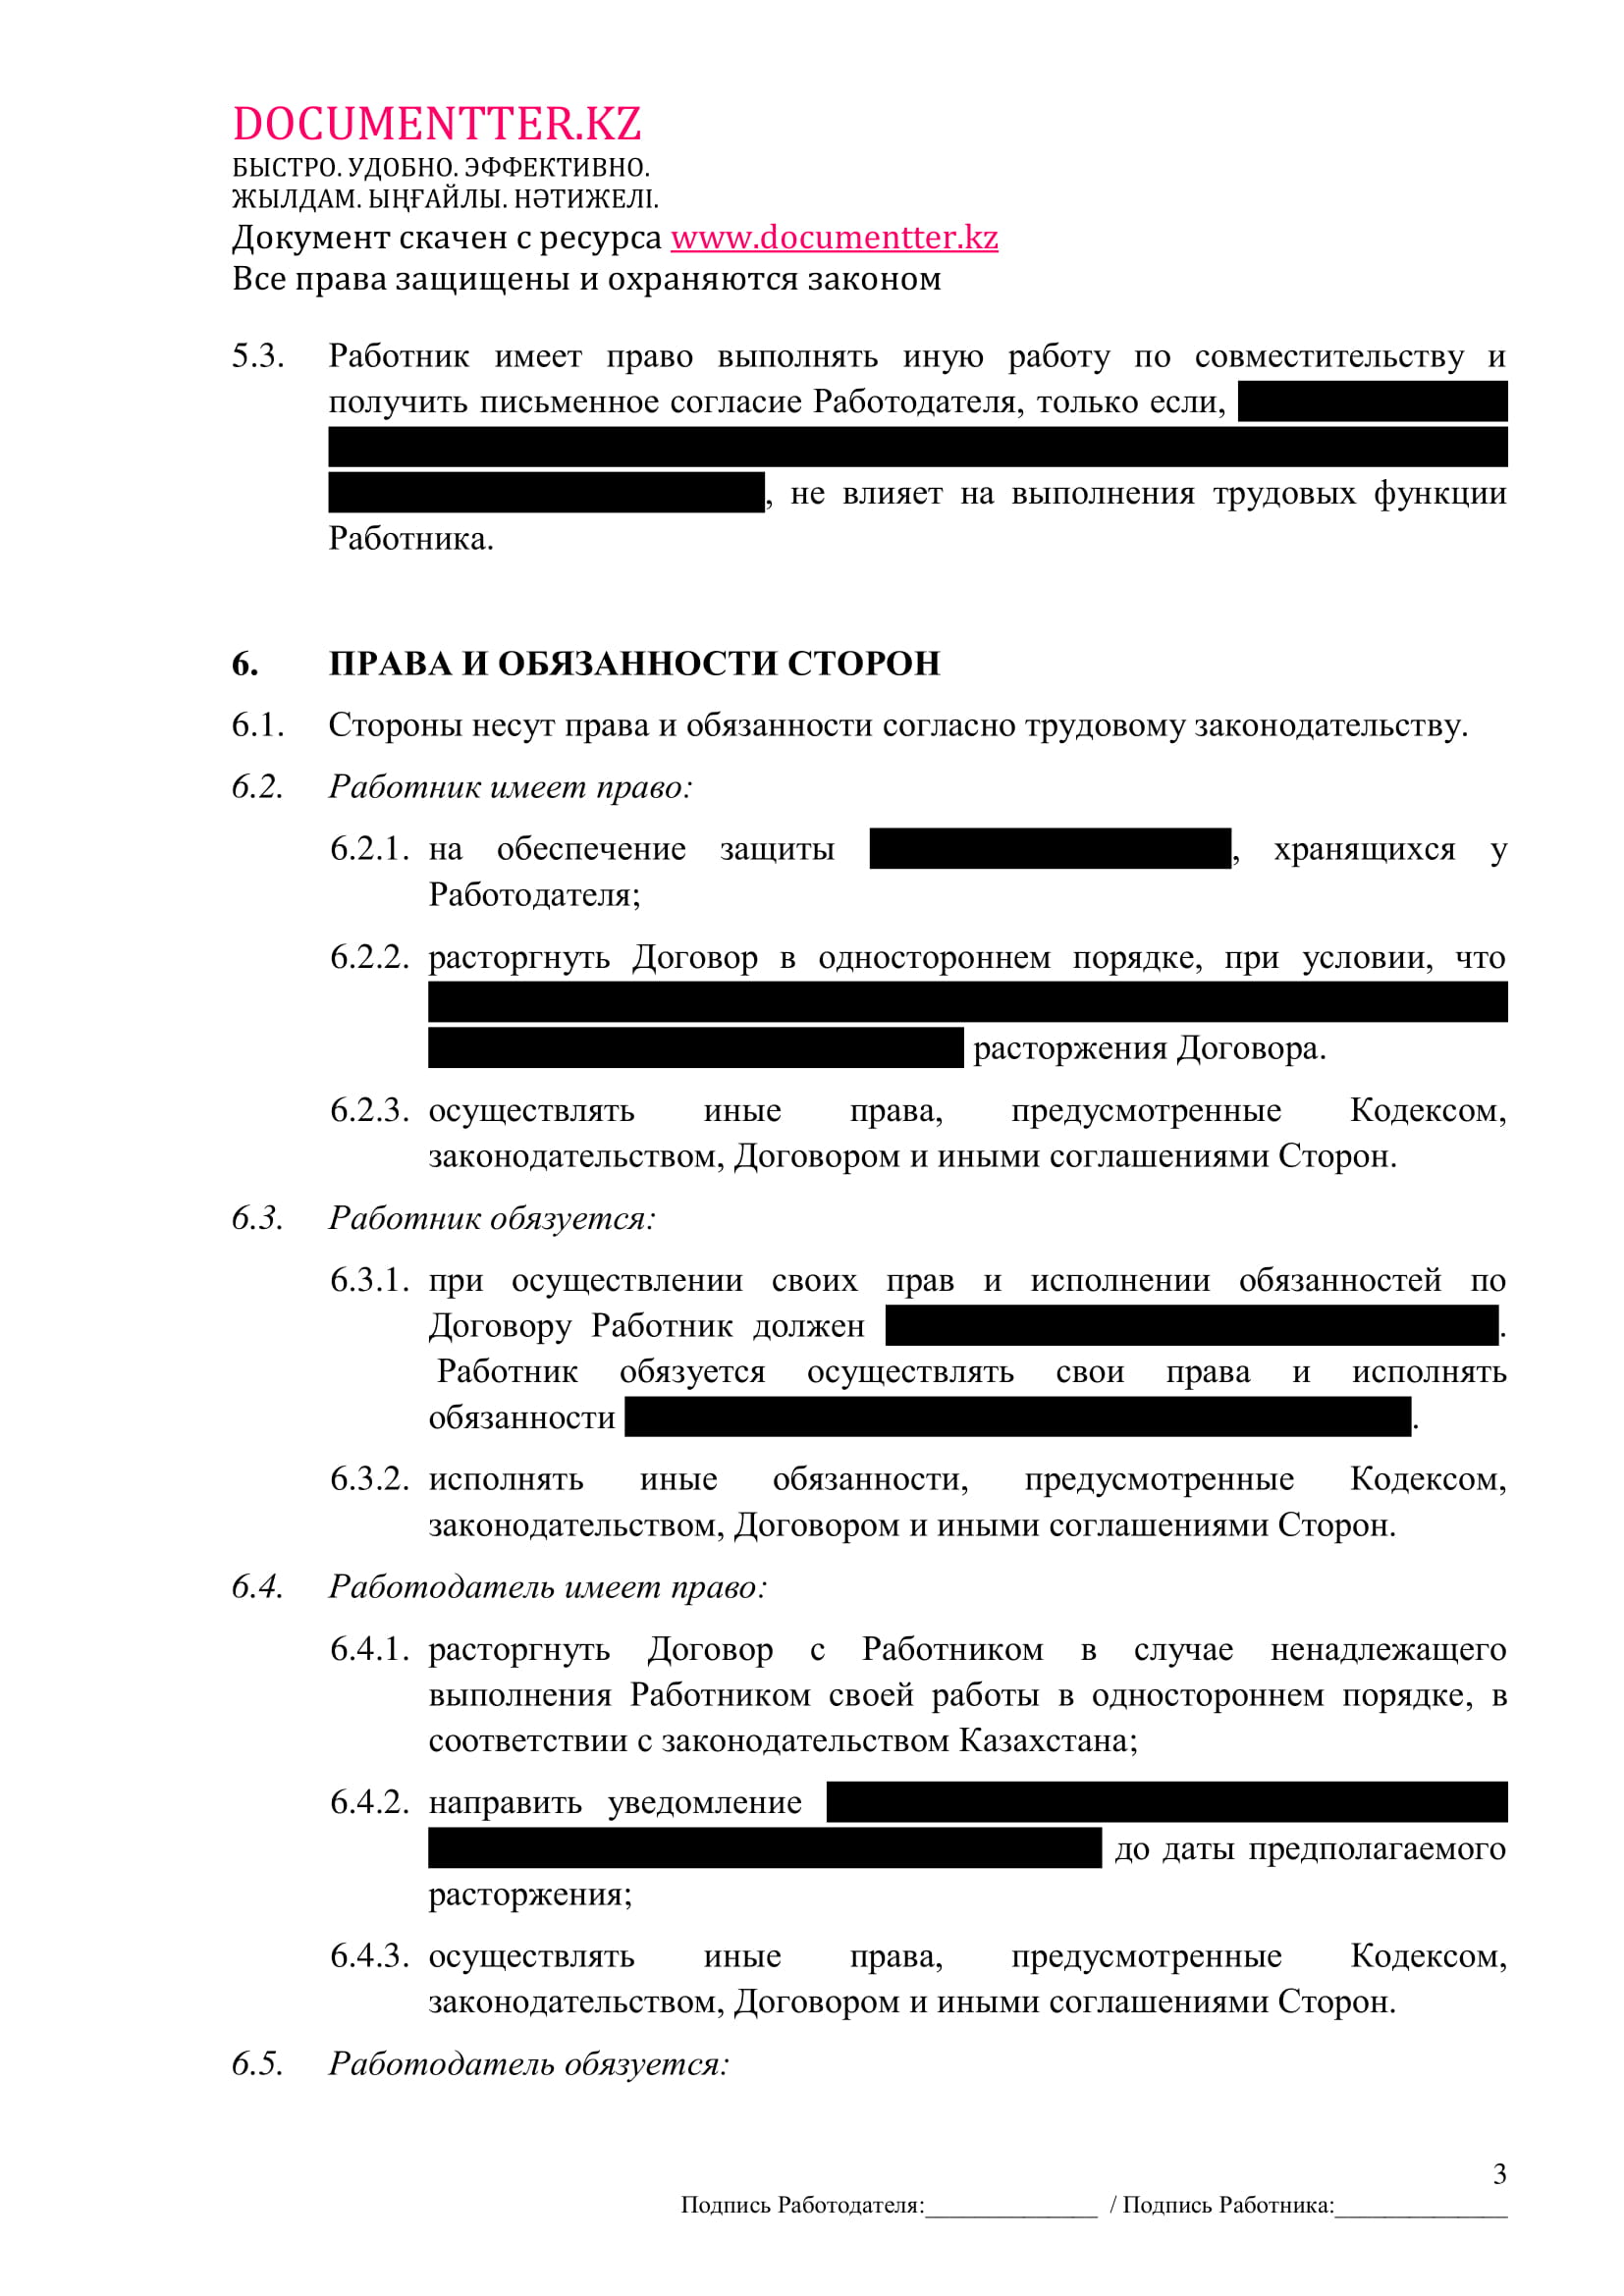 Трудовой договор | documentterkz.com в Казахстане